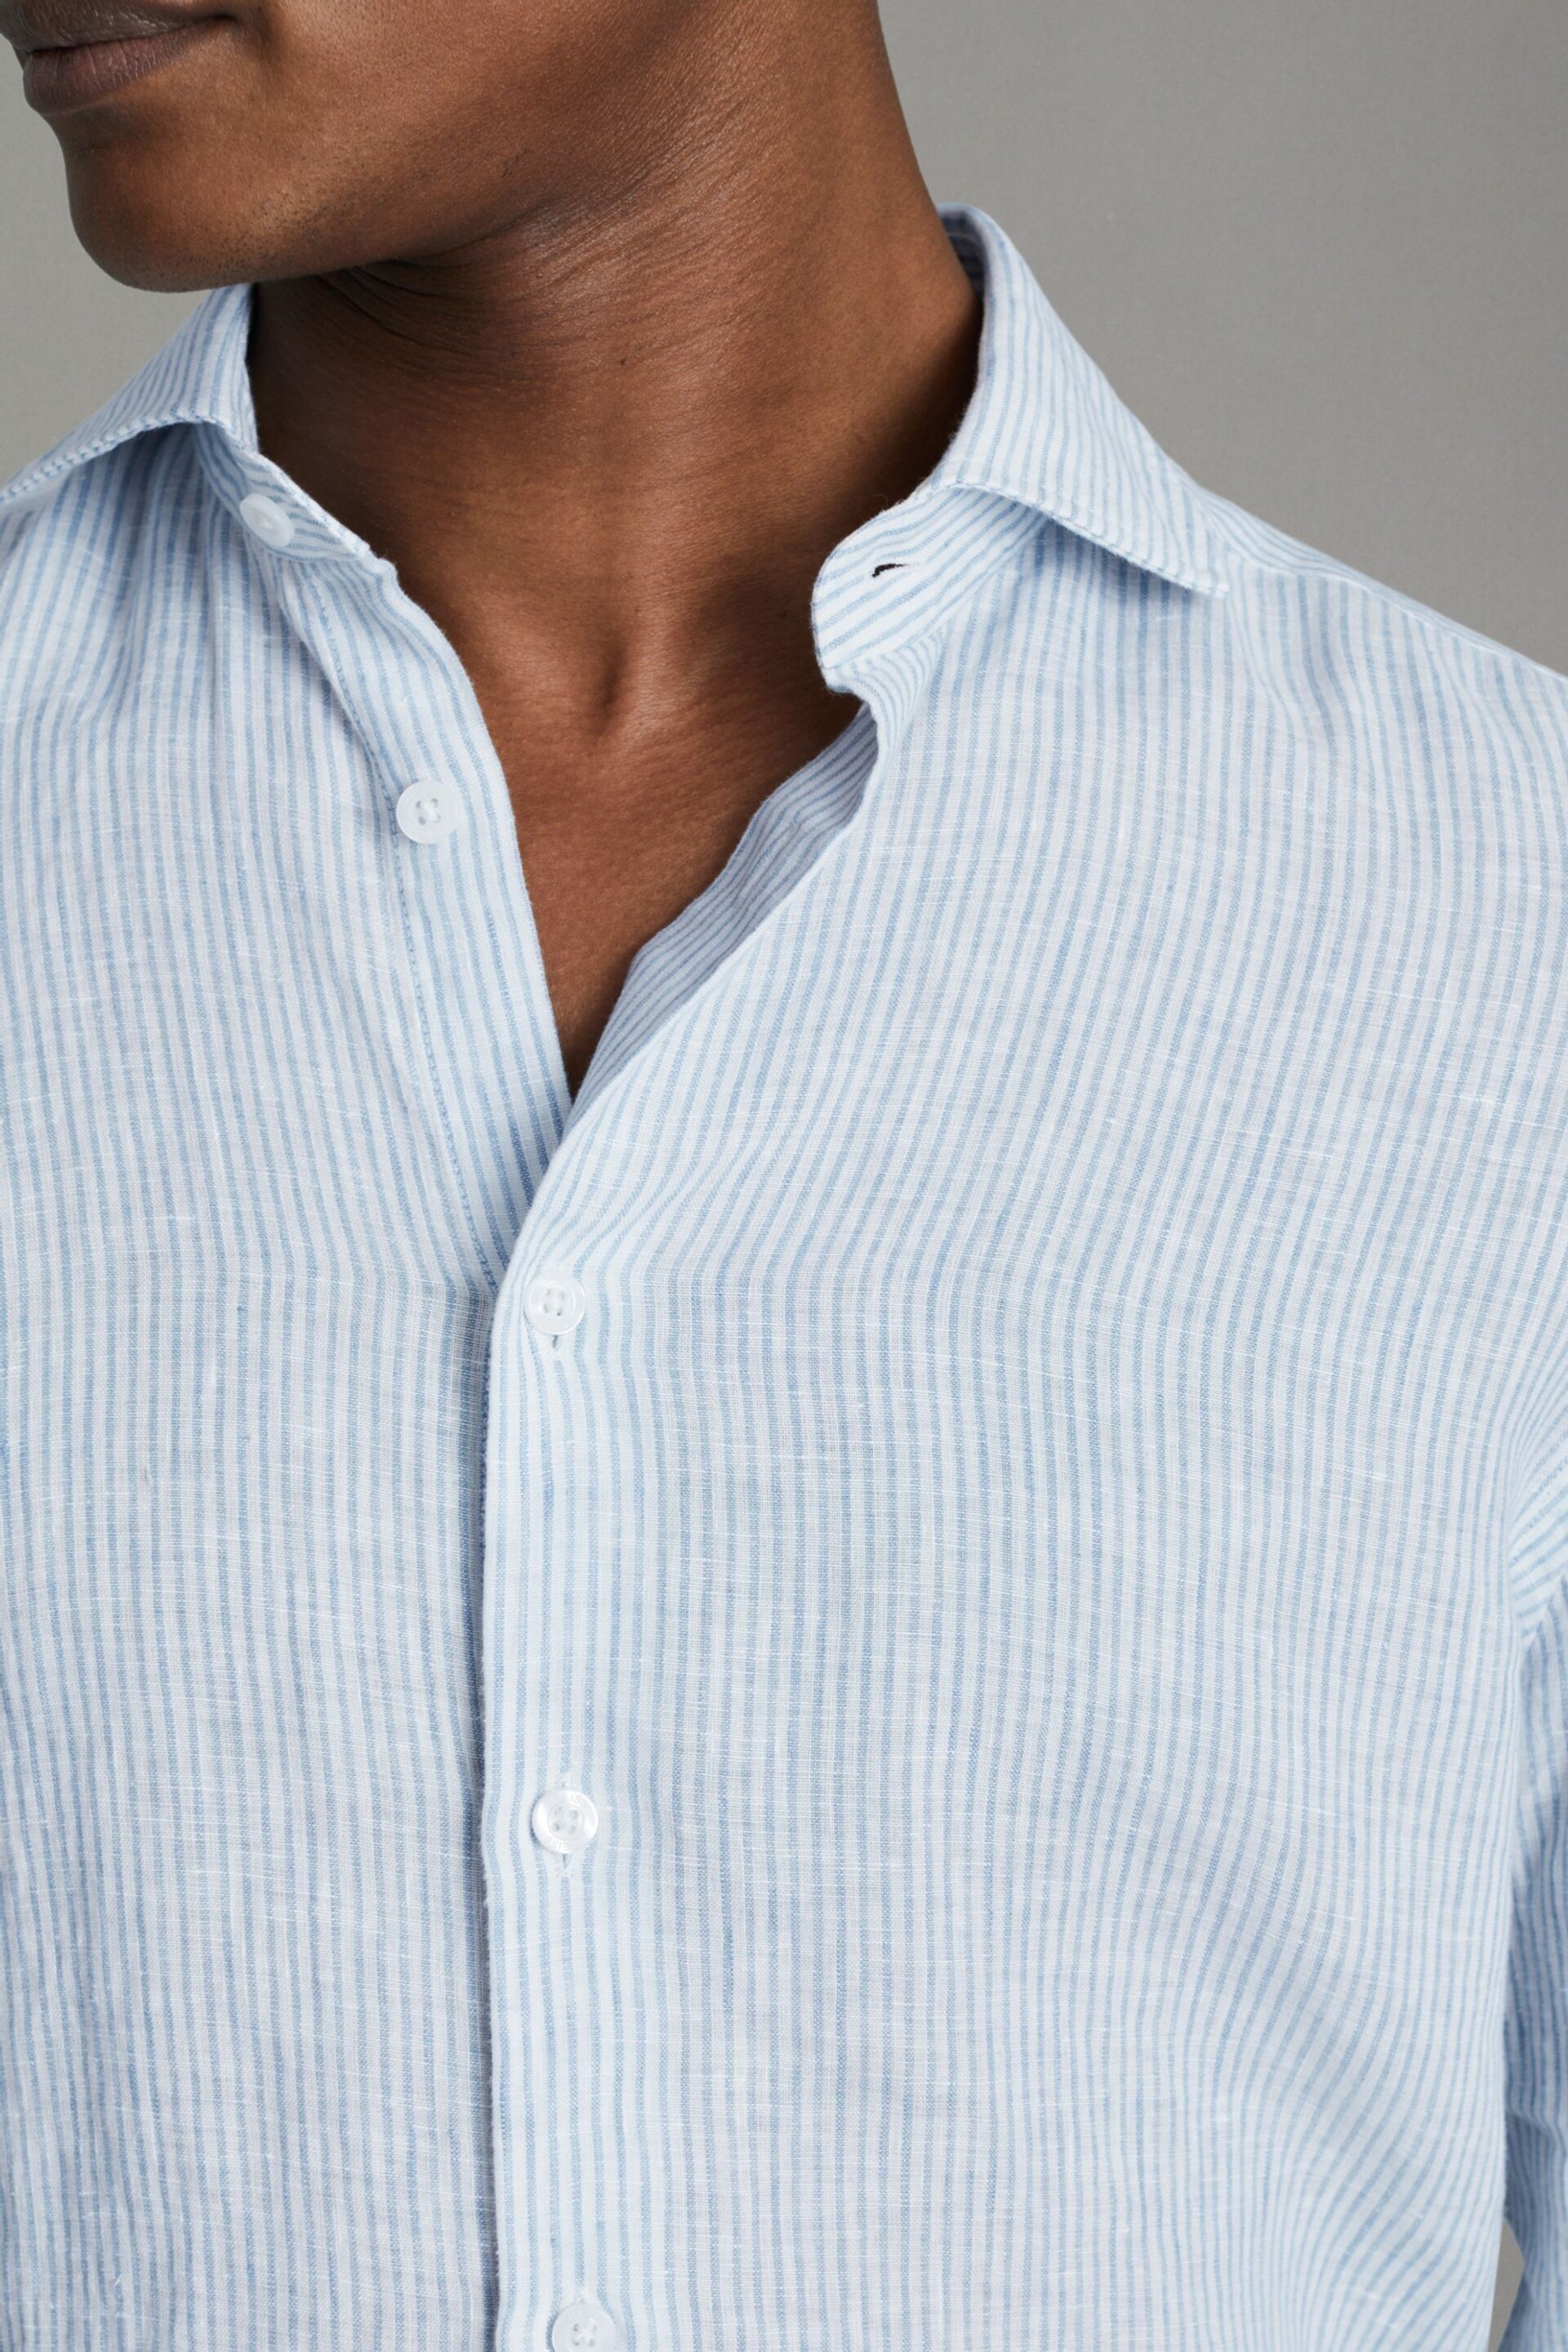 Reiss Soft Blue Fine Stripe Ruban Linen Button-Through Shirt - Image 4 of 6